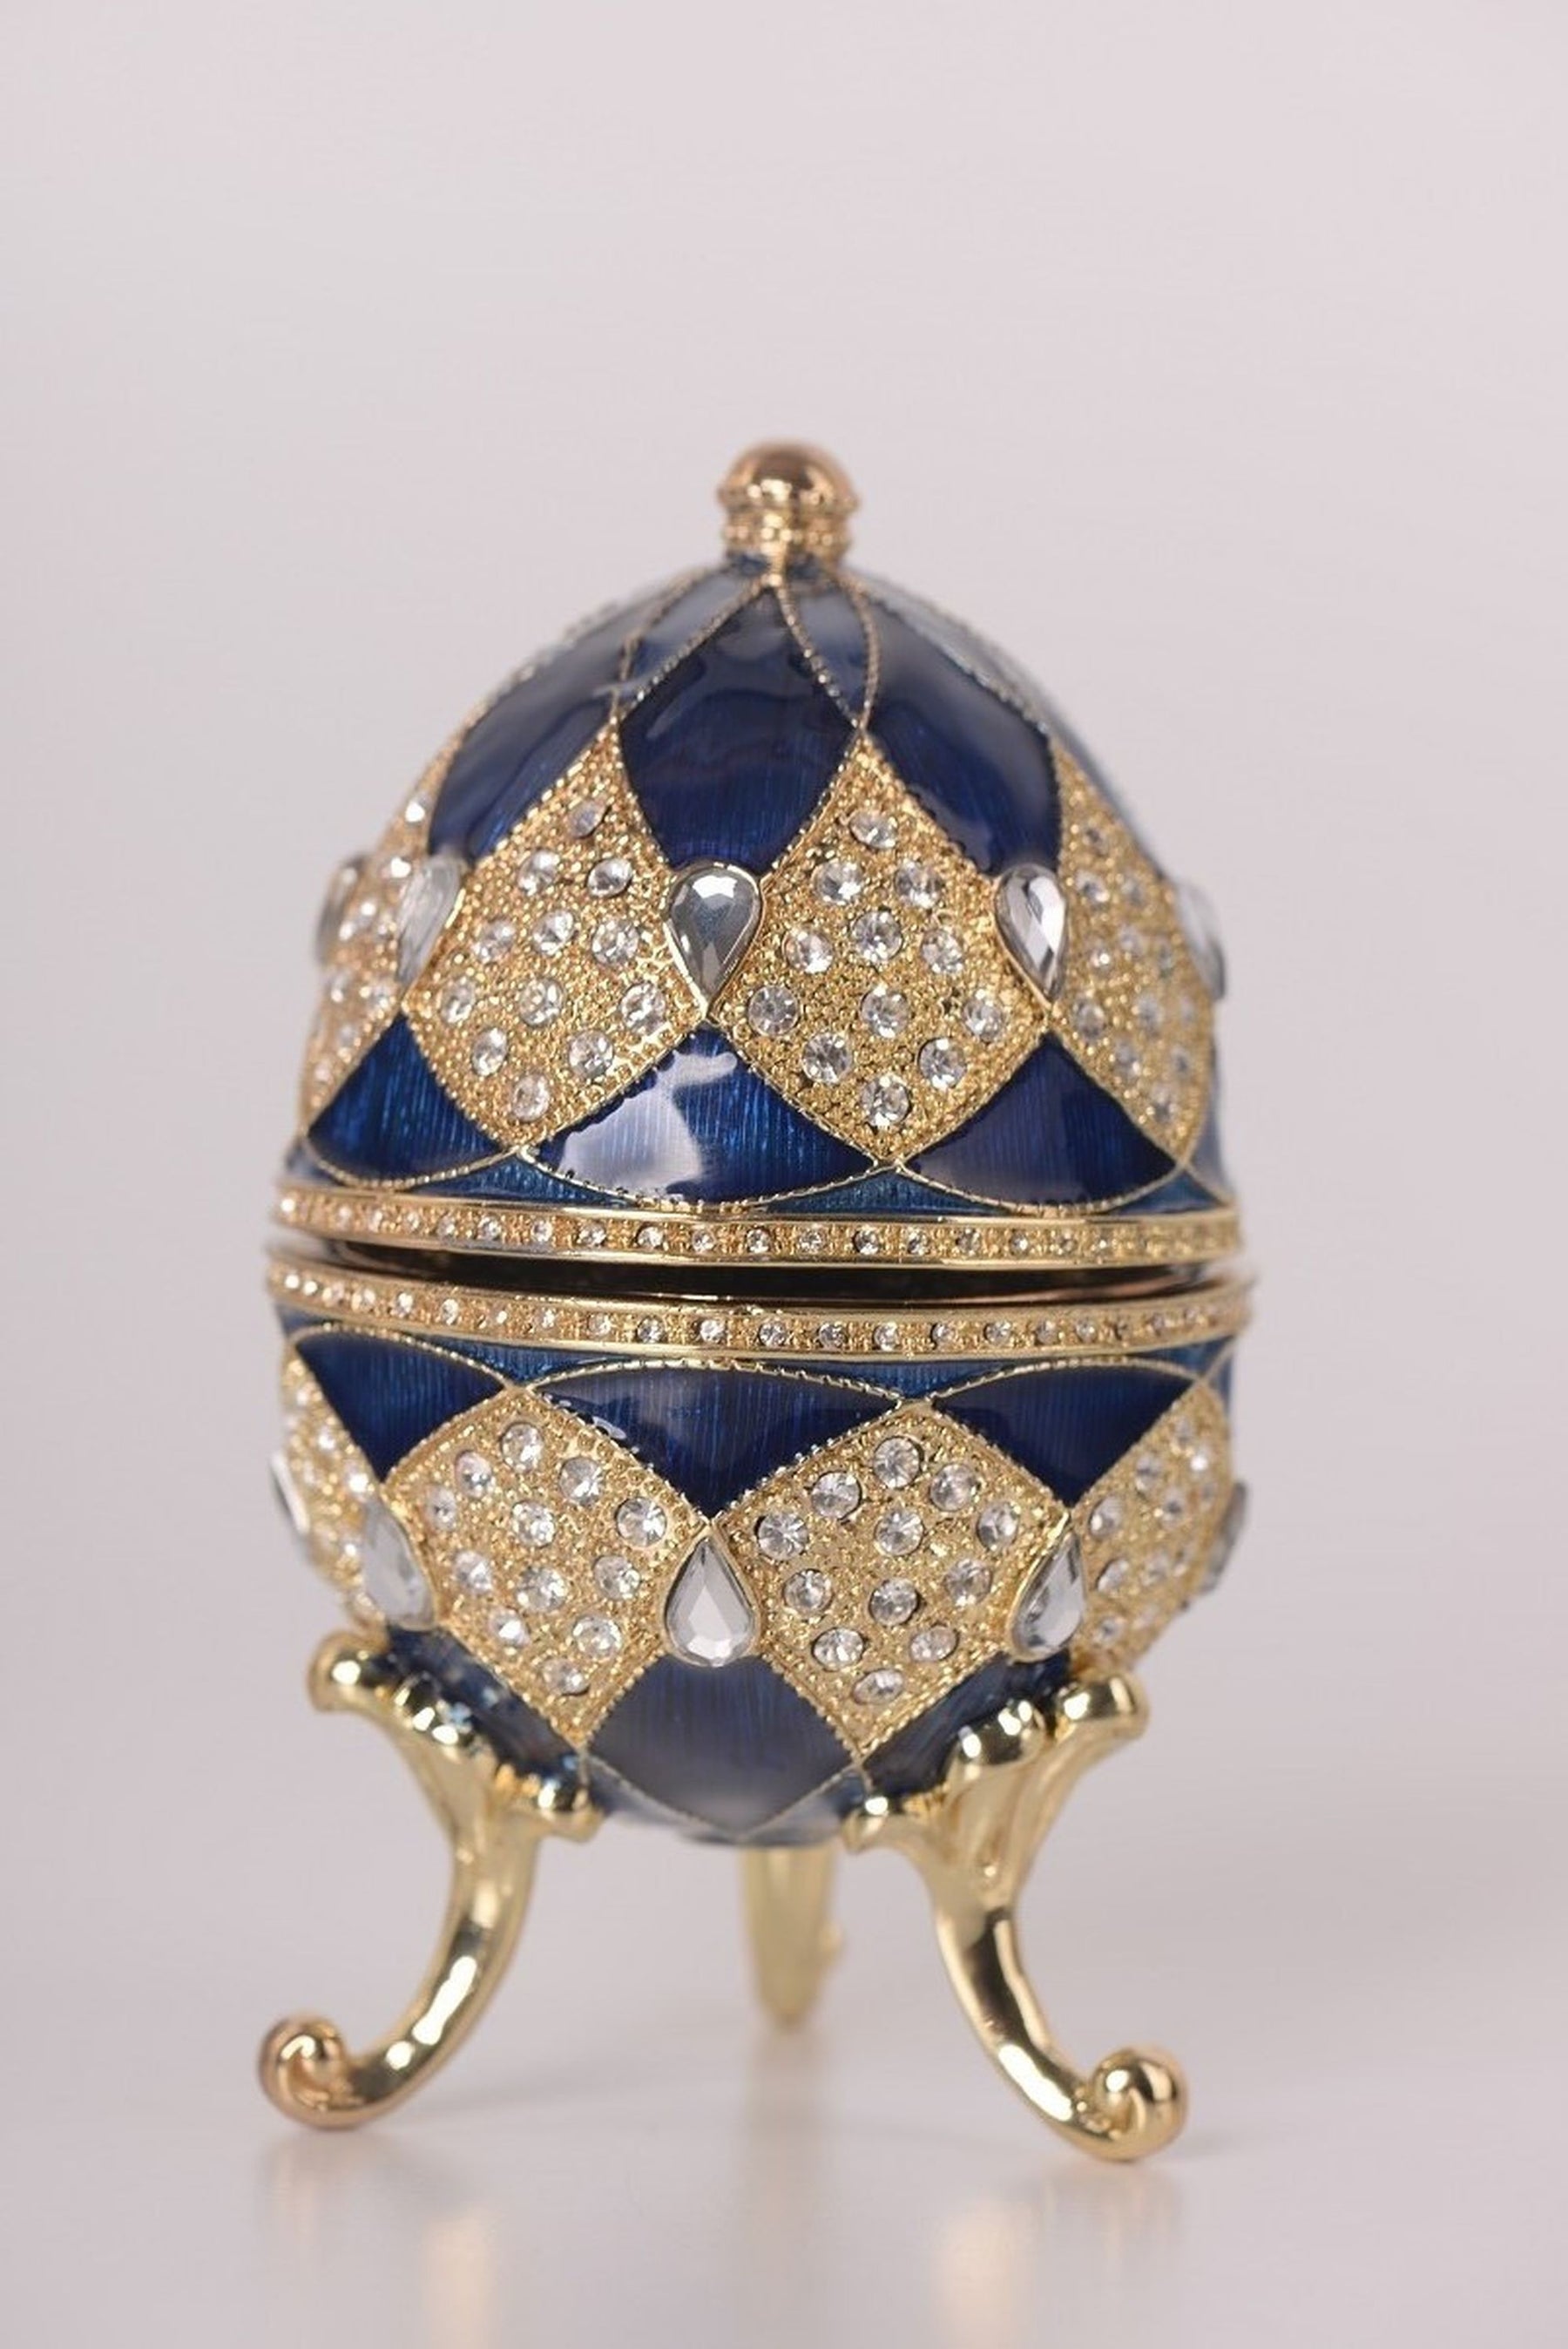 Blaues Fabergé-Ei mit Ei-Anhänger im Inneren